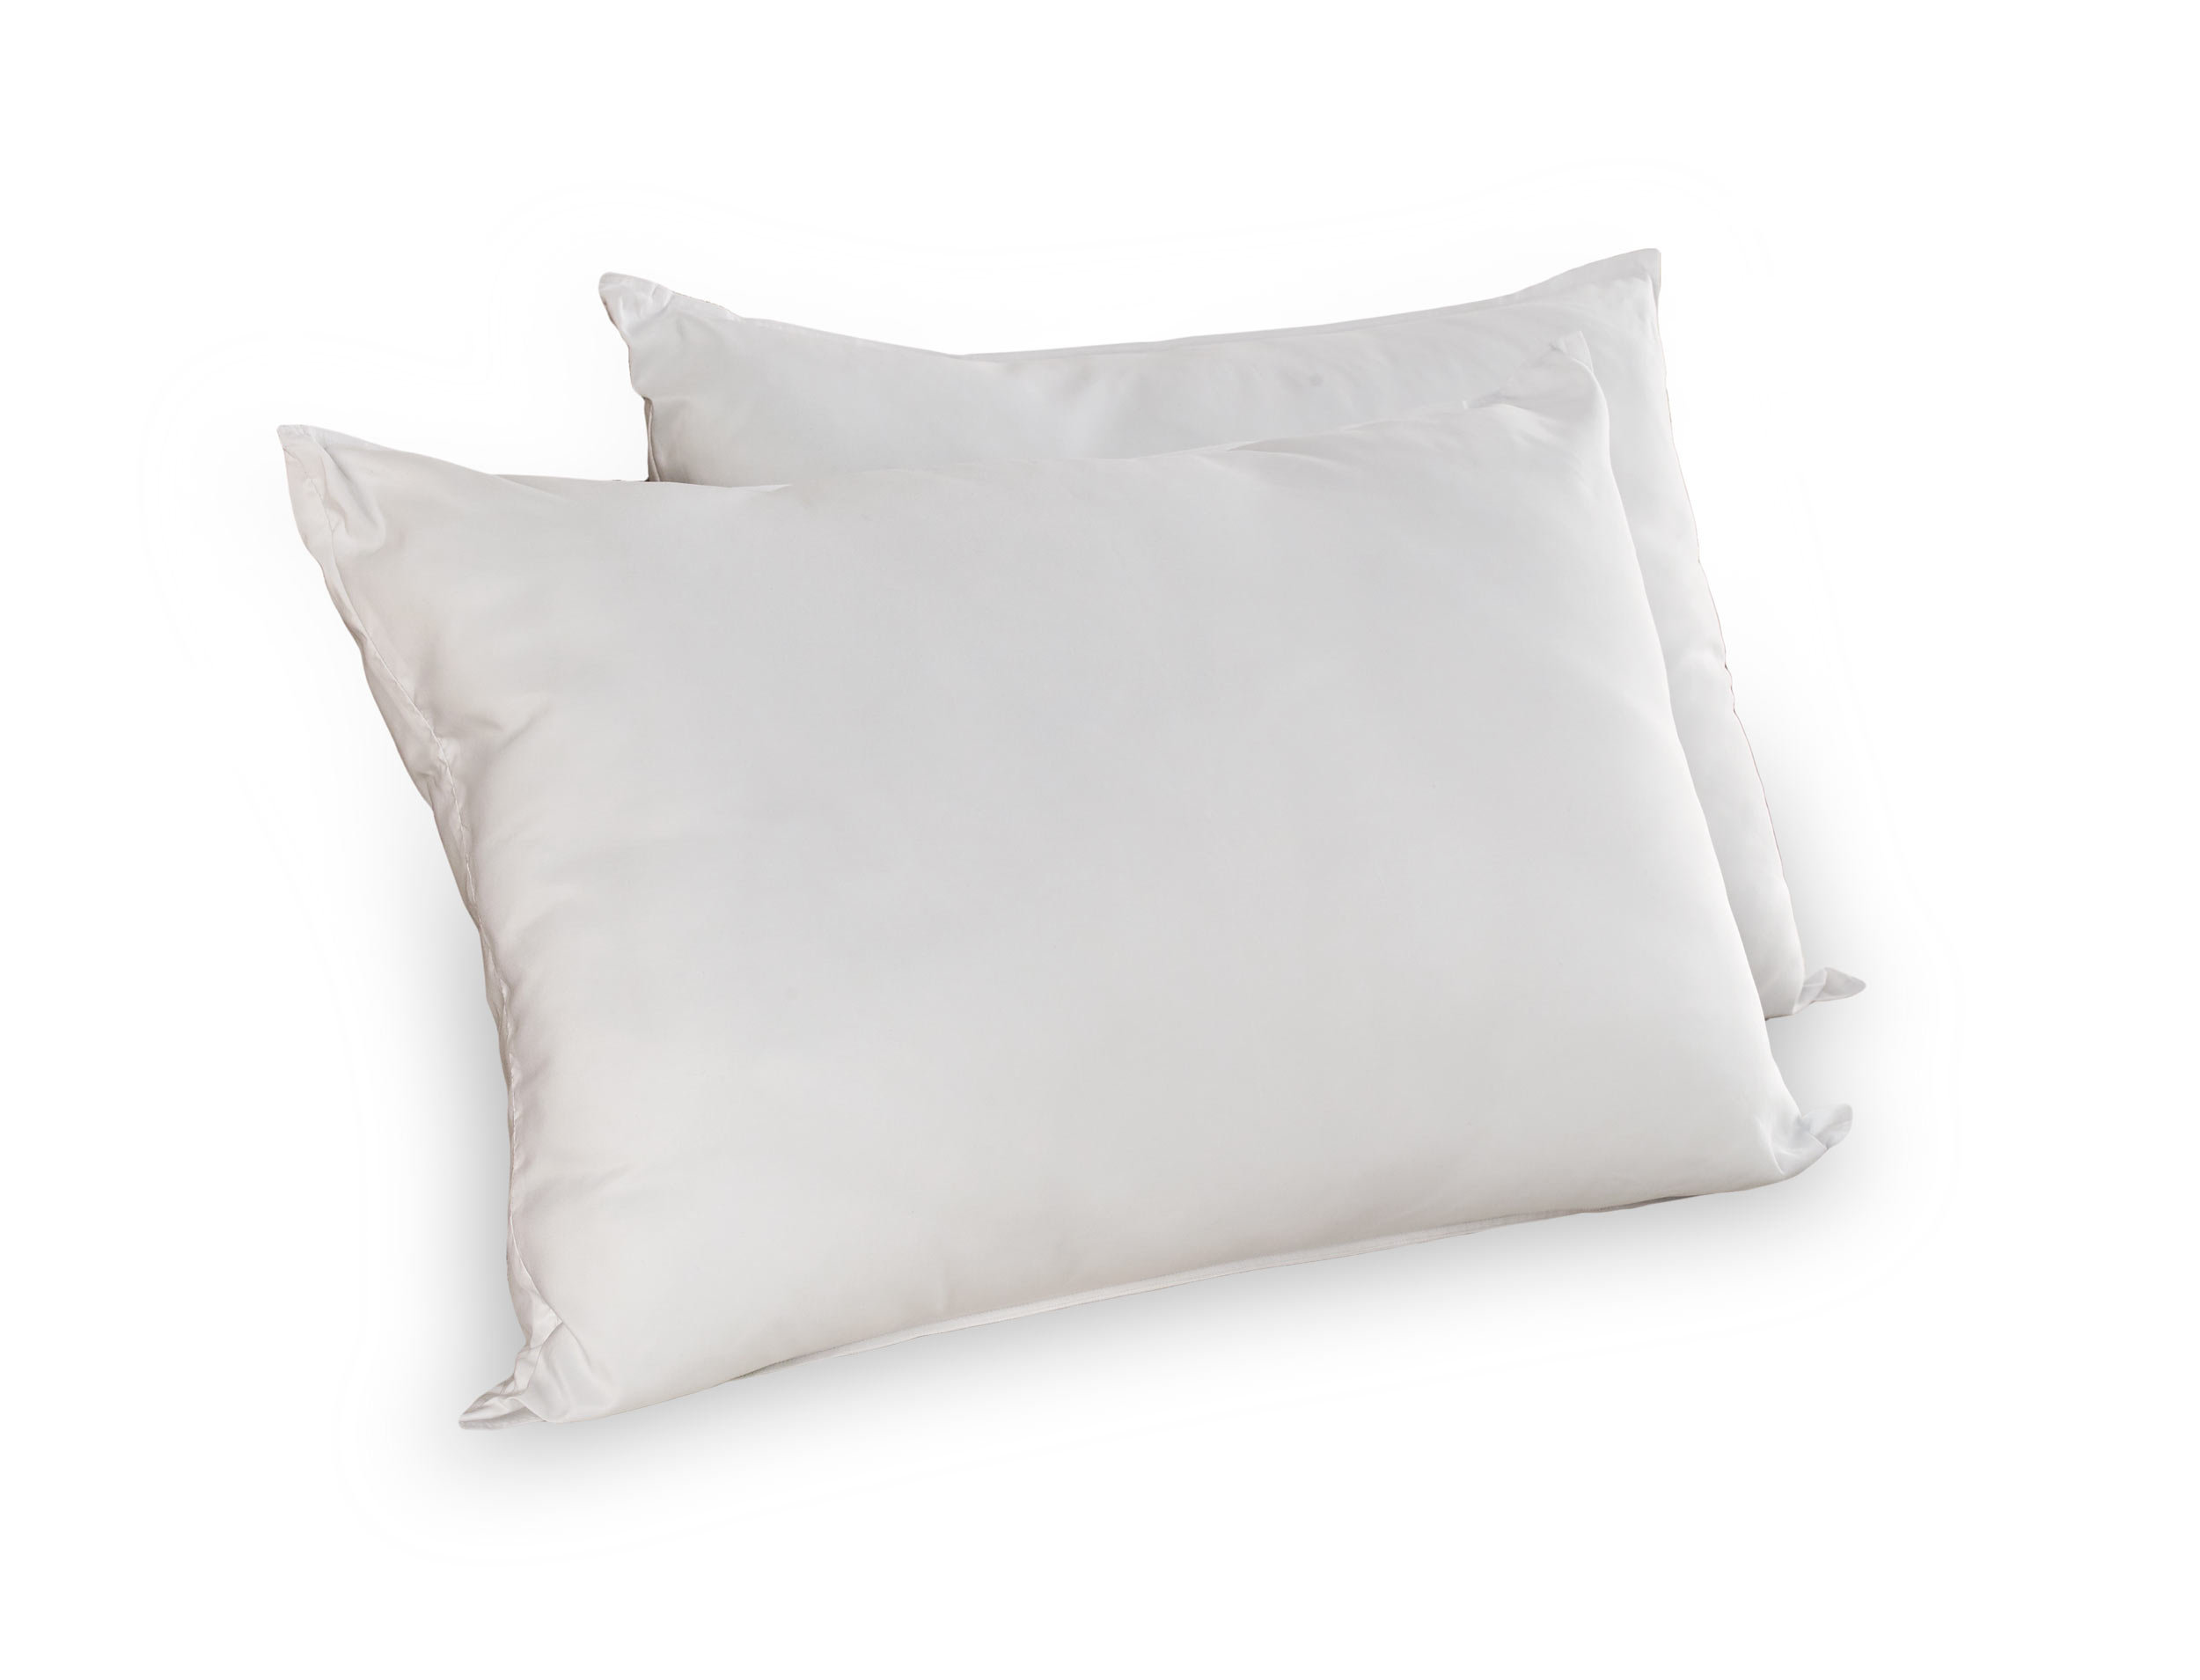 https://assets.wfcdn.com/im/64594574/compr-r85/2533/253323567/wayfair-sleep-down-alternative-plush-pillow.jpg